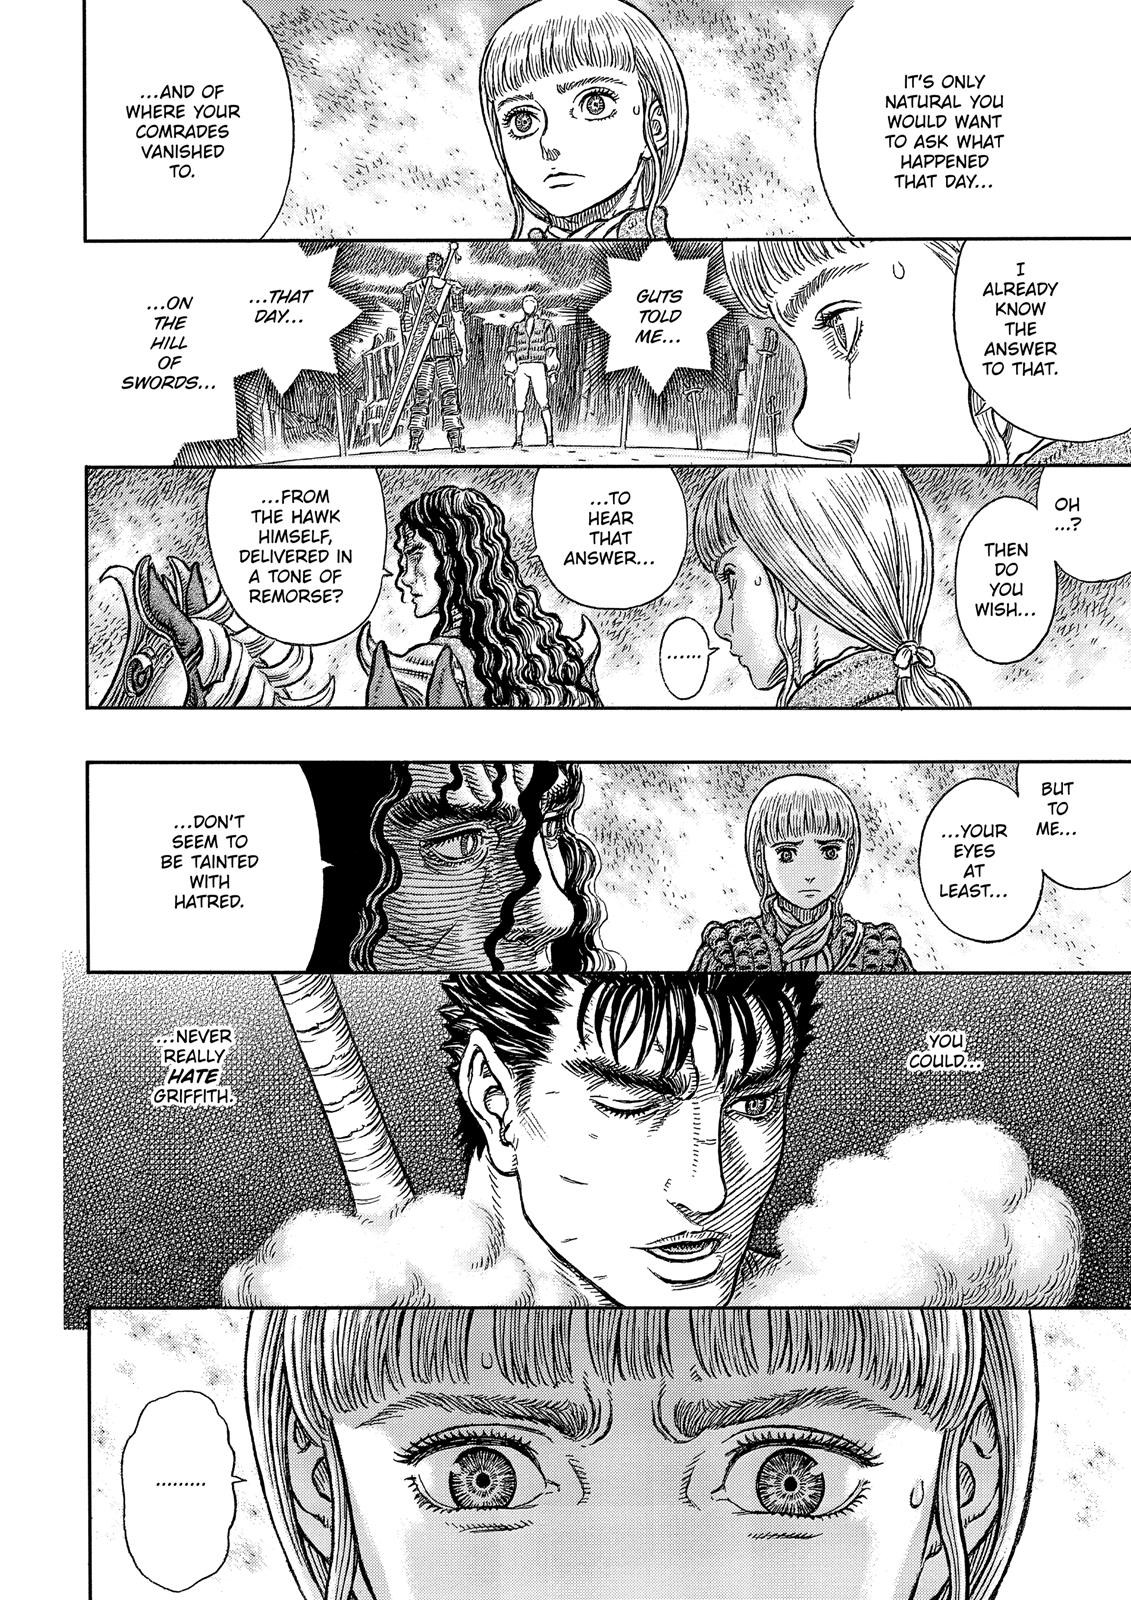 Berserk Manga Chapter 336 image 08